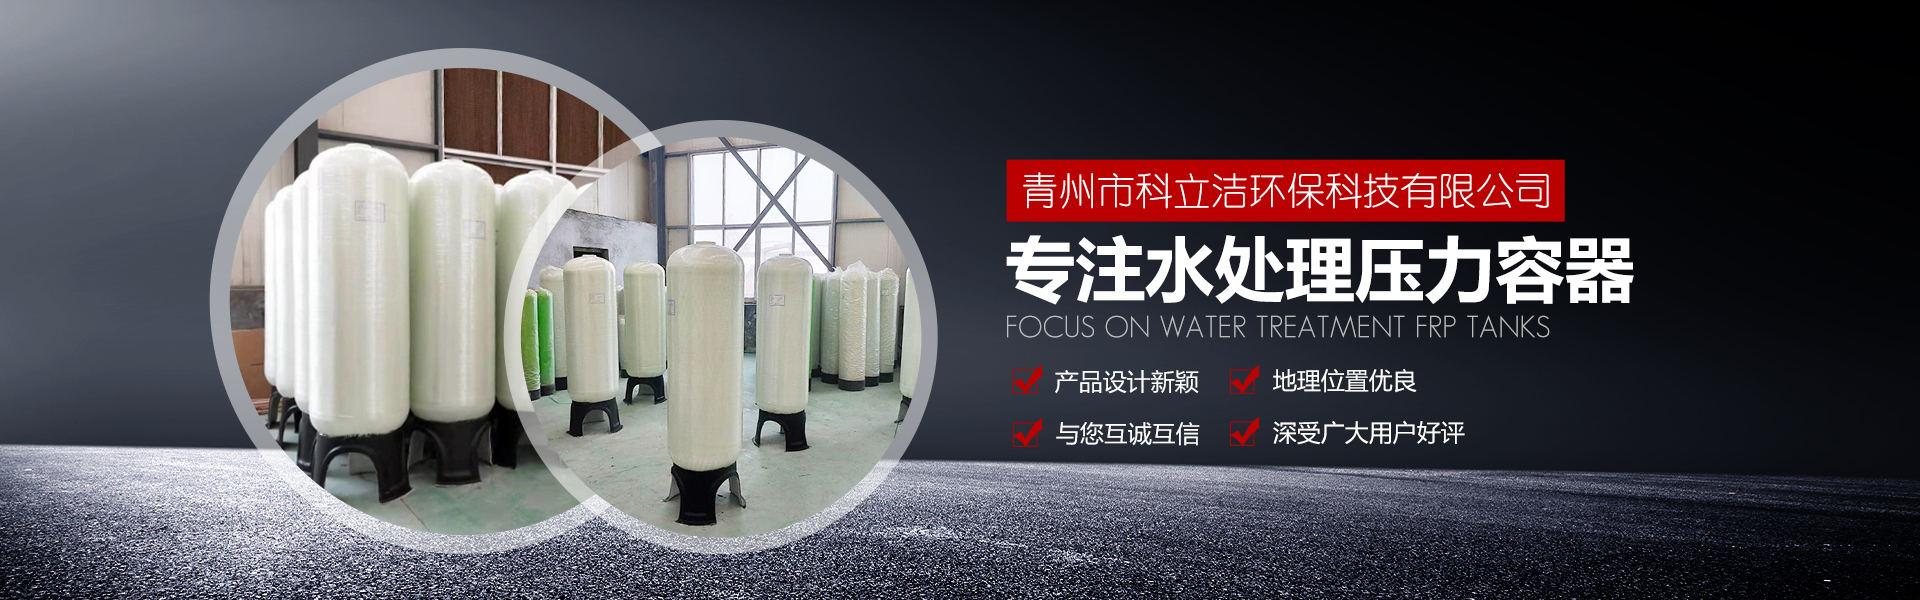 青州市科立洁环保科技有限公司